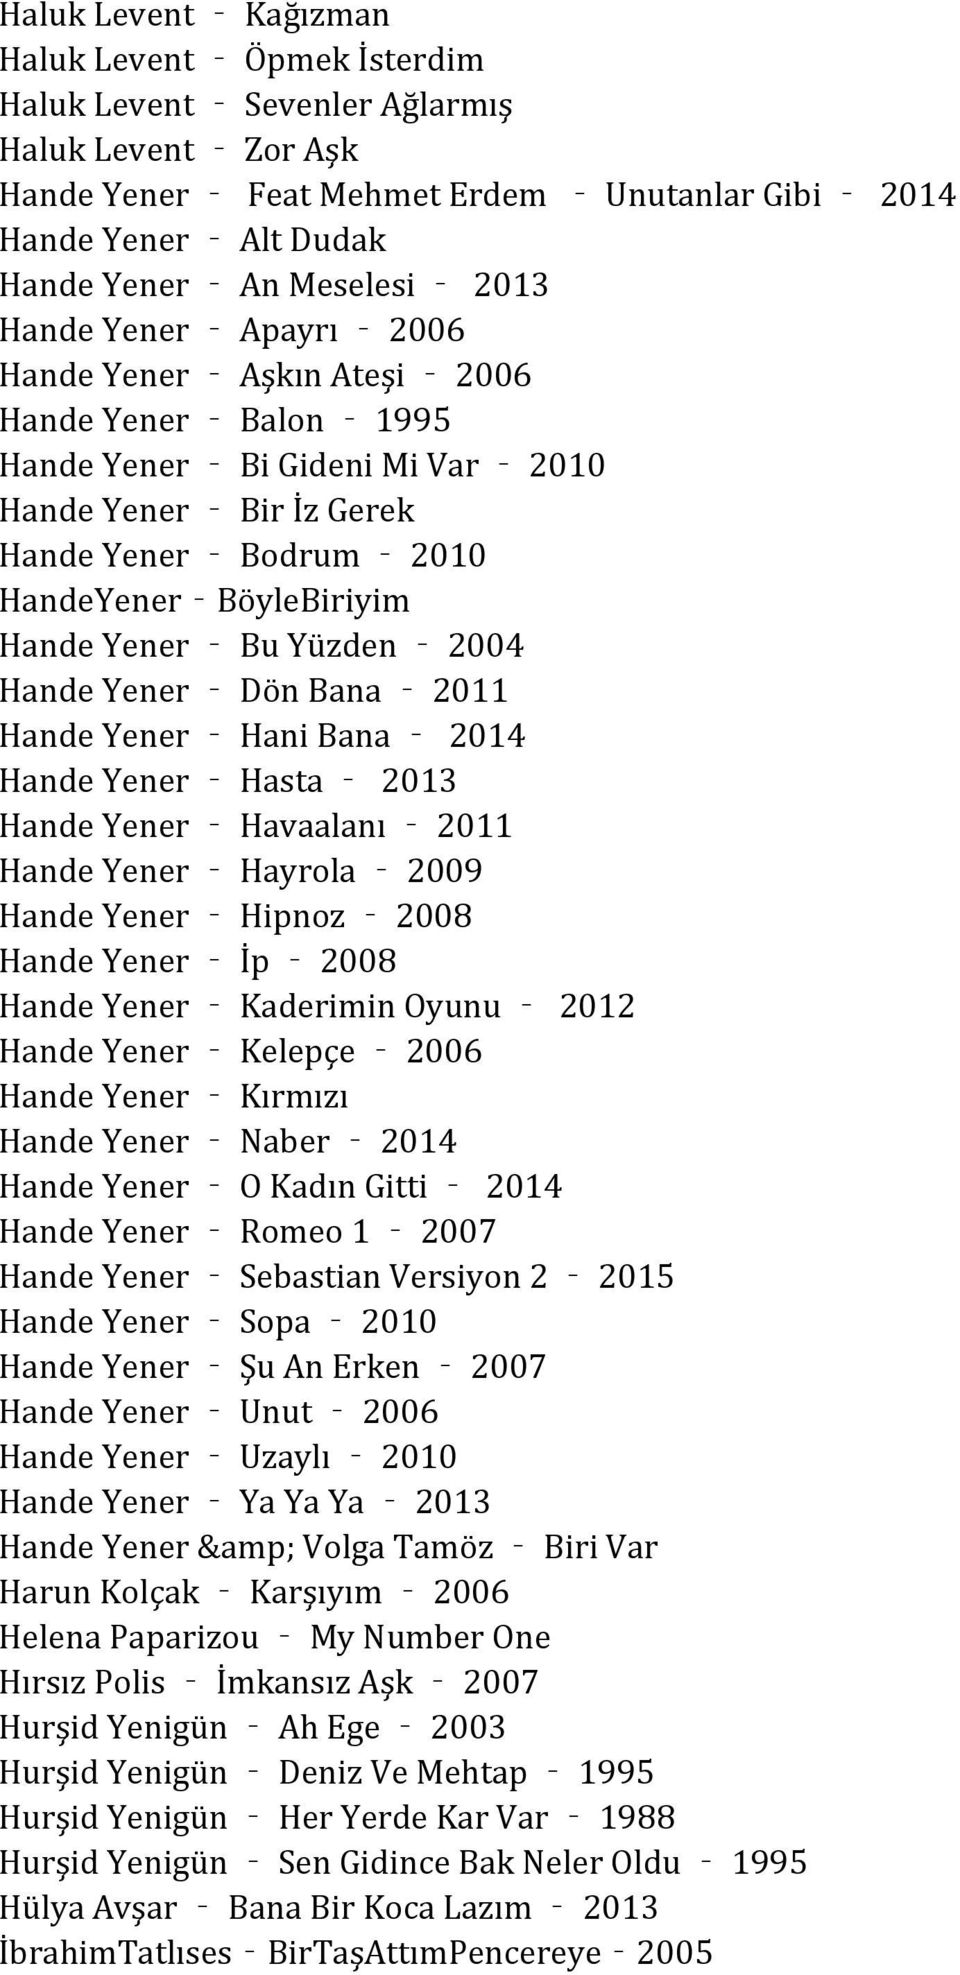 Bu Yüzden 2004 Hande Yener Dön Bana 2011 Hande Yener Hani Bana 2014 Hande Yener Hasta 2013 Hande Yener Havaalanı 2011 Hande Yener Hayrola 2009 Hande Yener Hipnoz 2008 Hande Yener İp 2008 Hande Yener